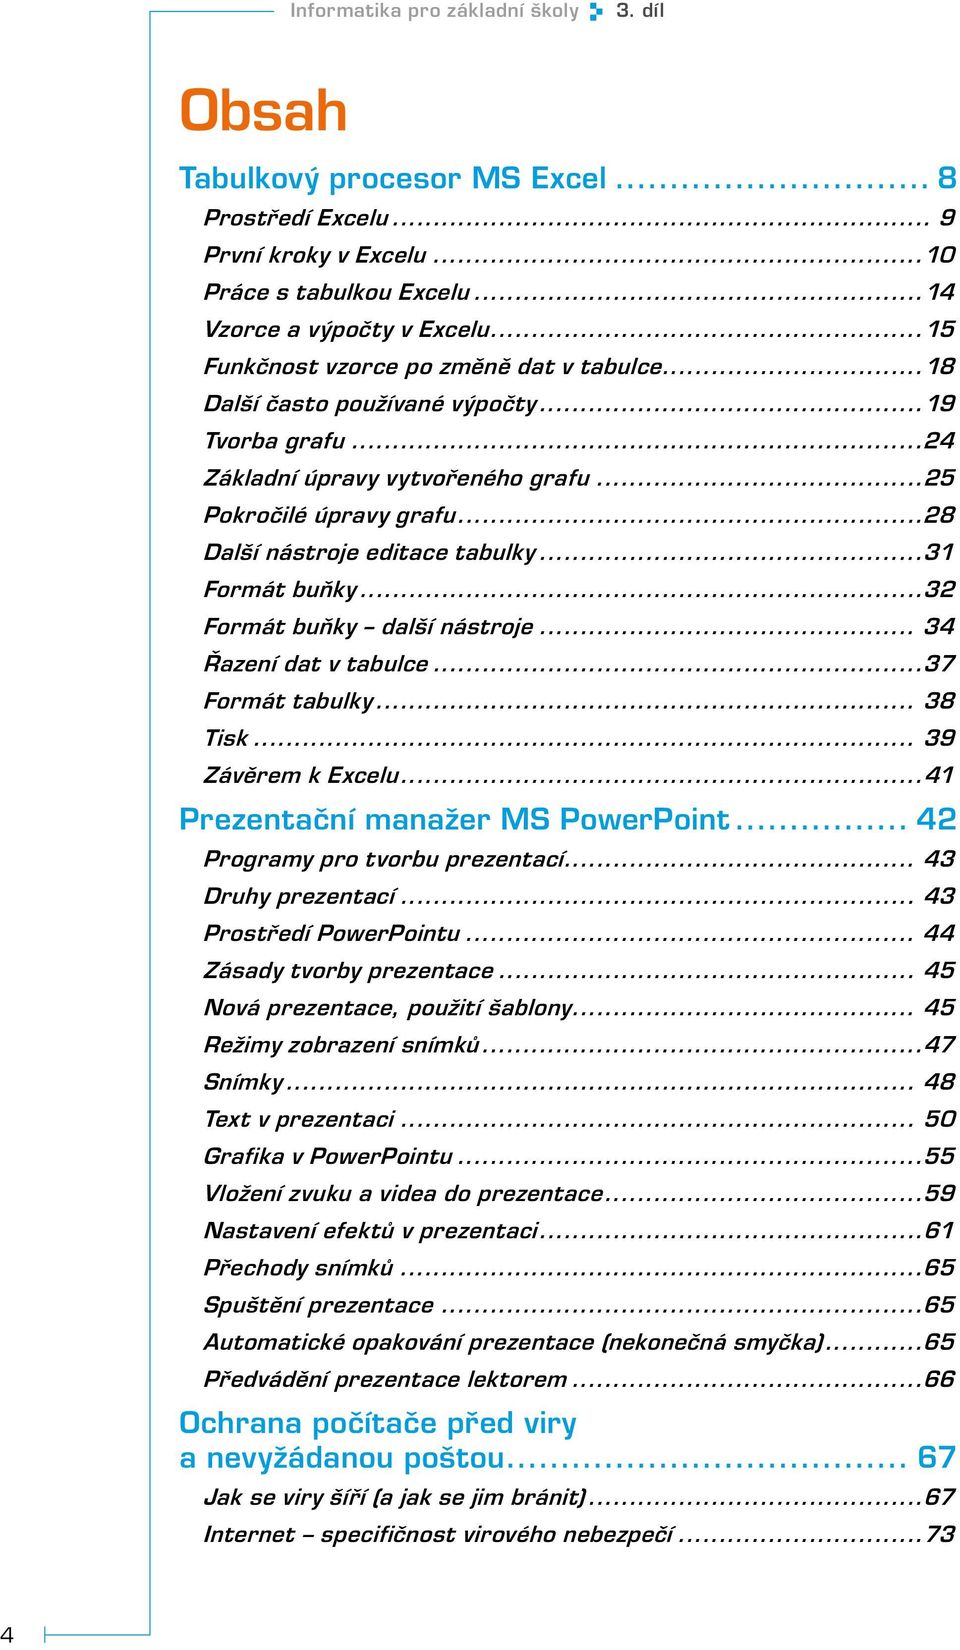 ..31 Formát buňky...32 Formát buňky další nástroje... 34 Řazení dat v tabulce...37 Formát tabulky... 38 Tisk... 39 Závěrem k Excelu...41 Prezentační manažer MS PowerPoint.